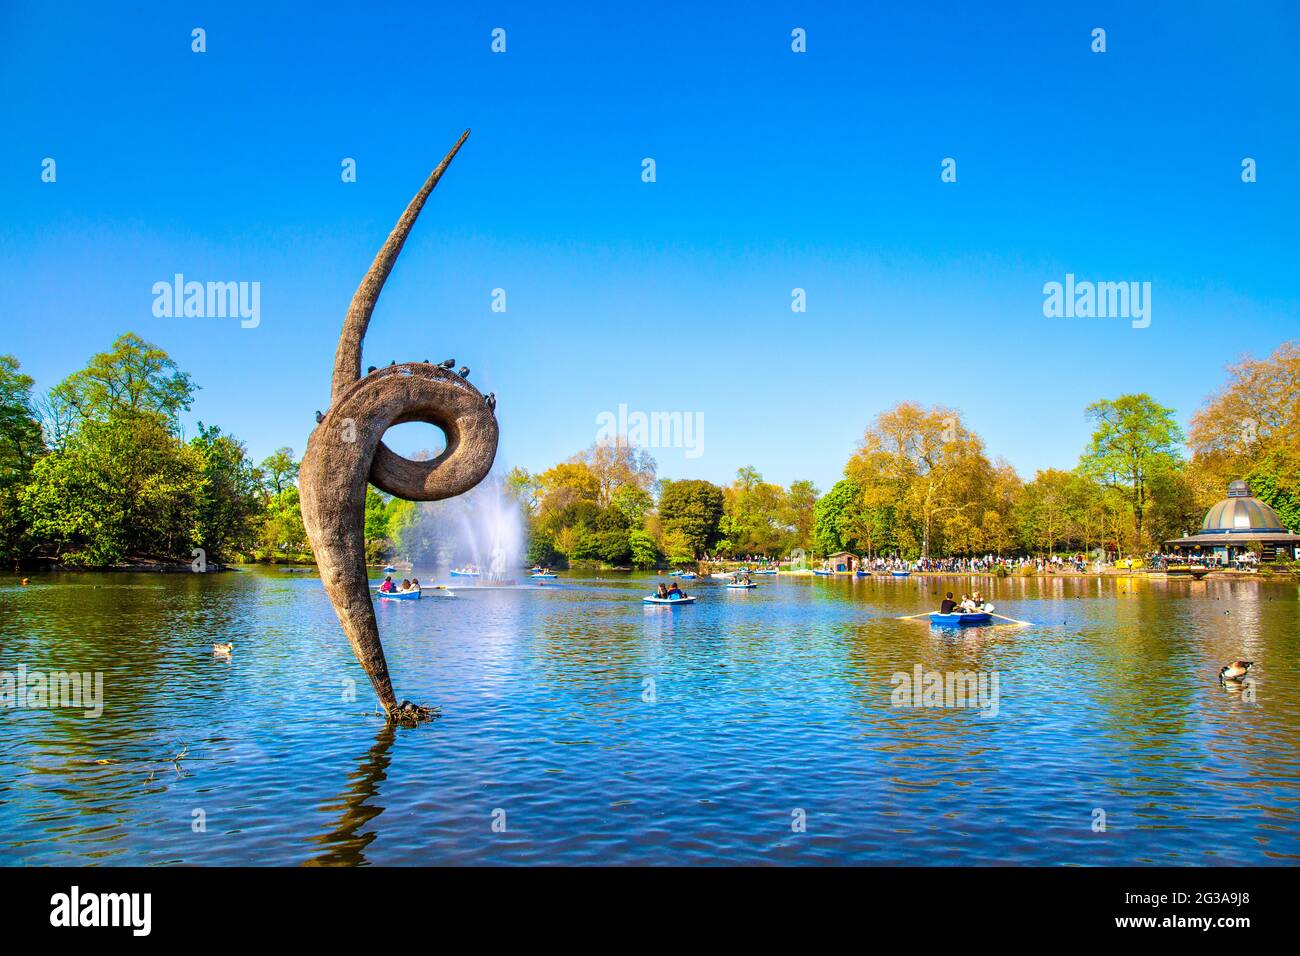 Sculpture de foin d’Erno Bartha et bateaux sur West Boating Lake, Victoria Park, Londres, Royaume-Uni Banque D'Images